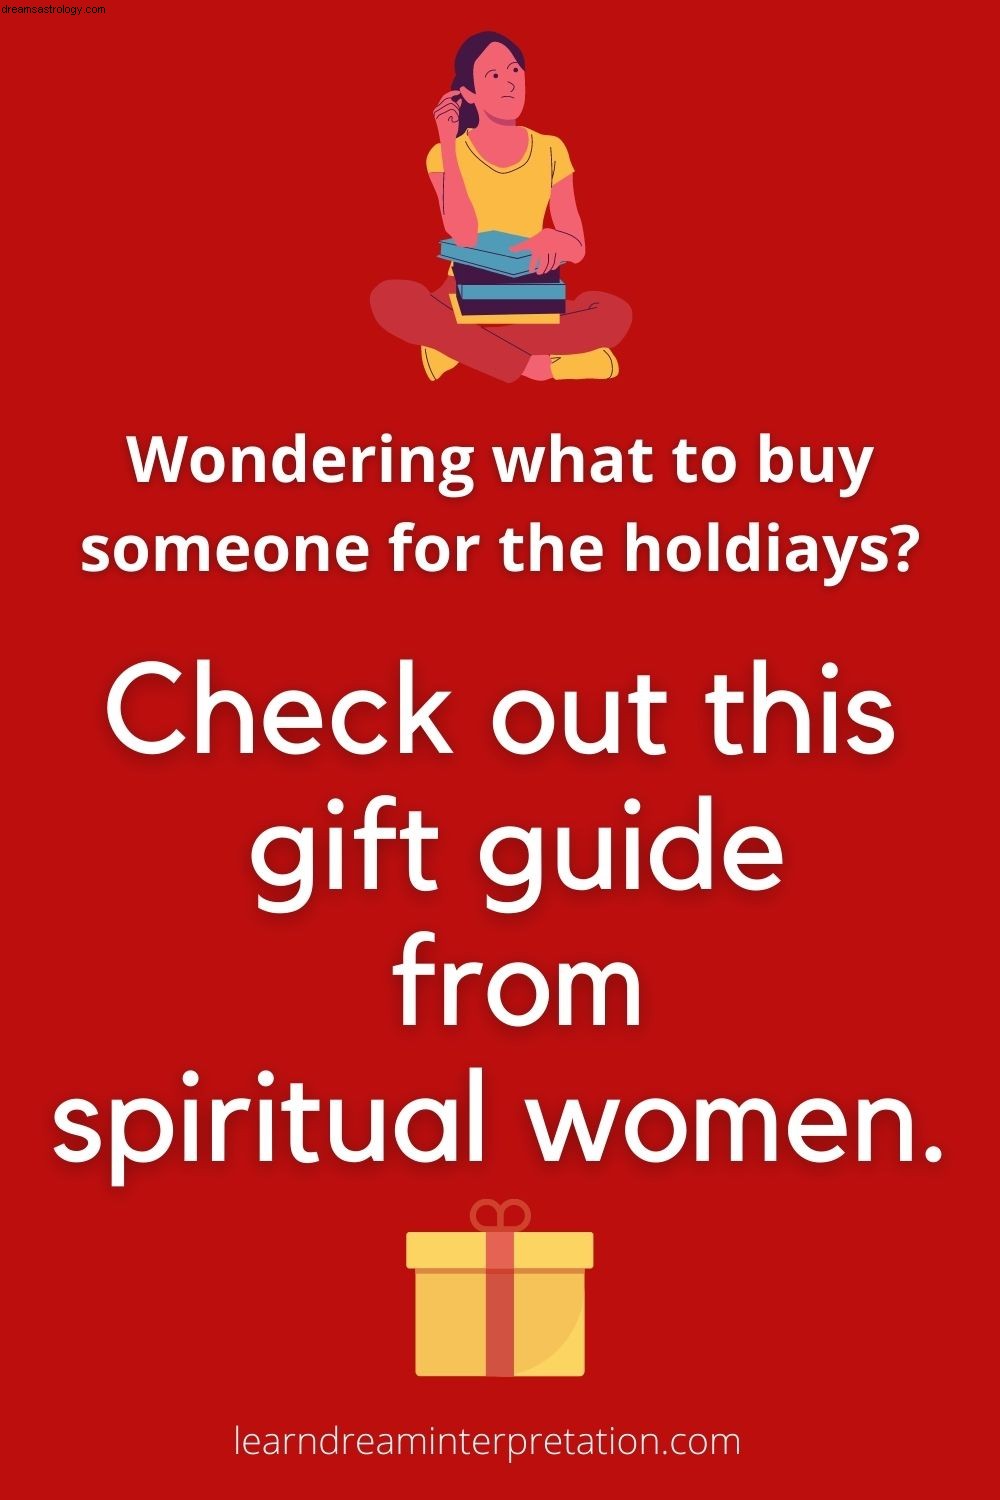 Πνευματικά δώρα εορτών 